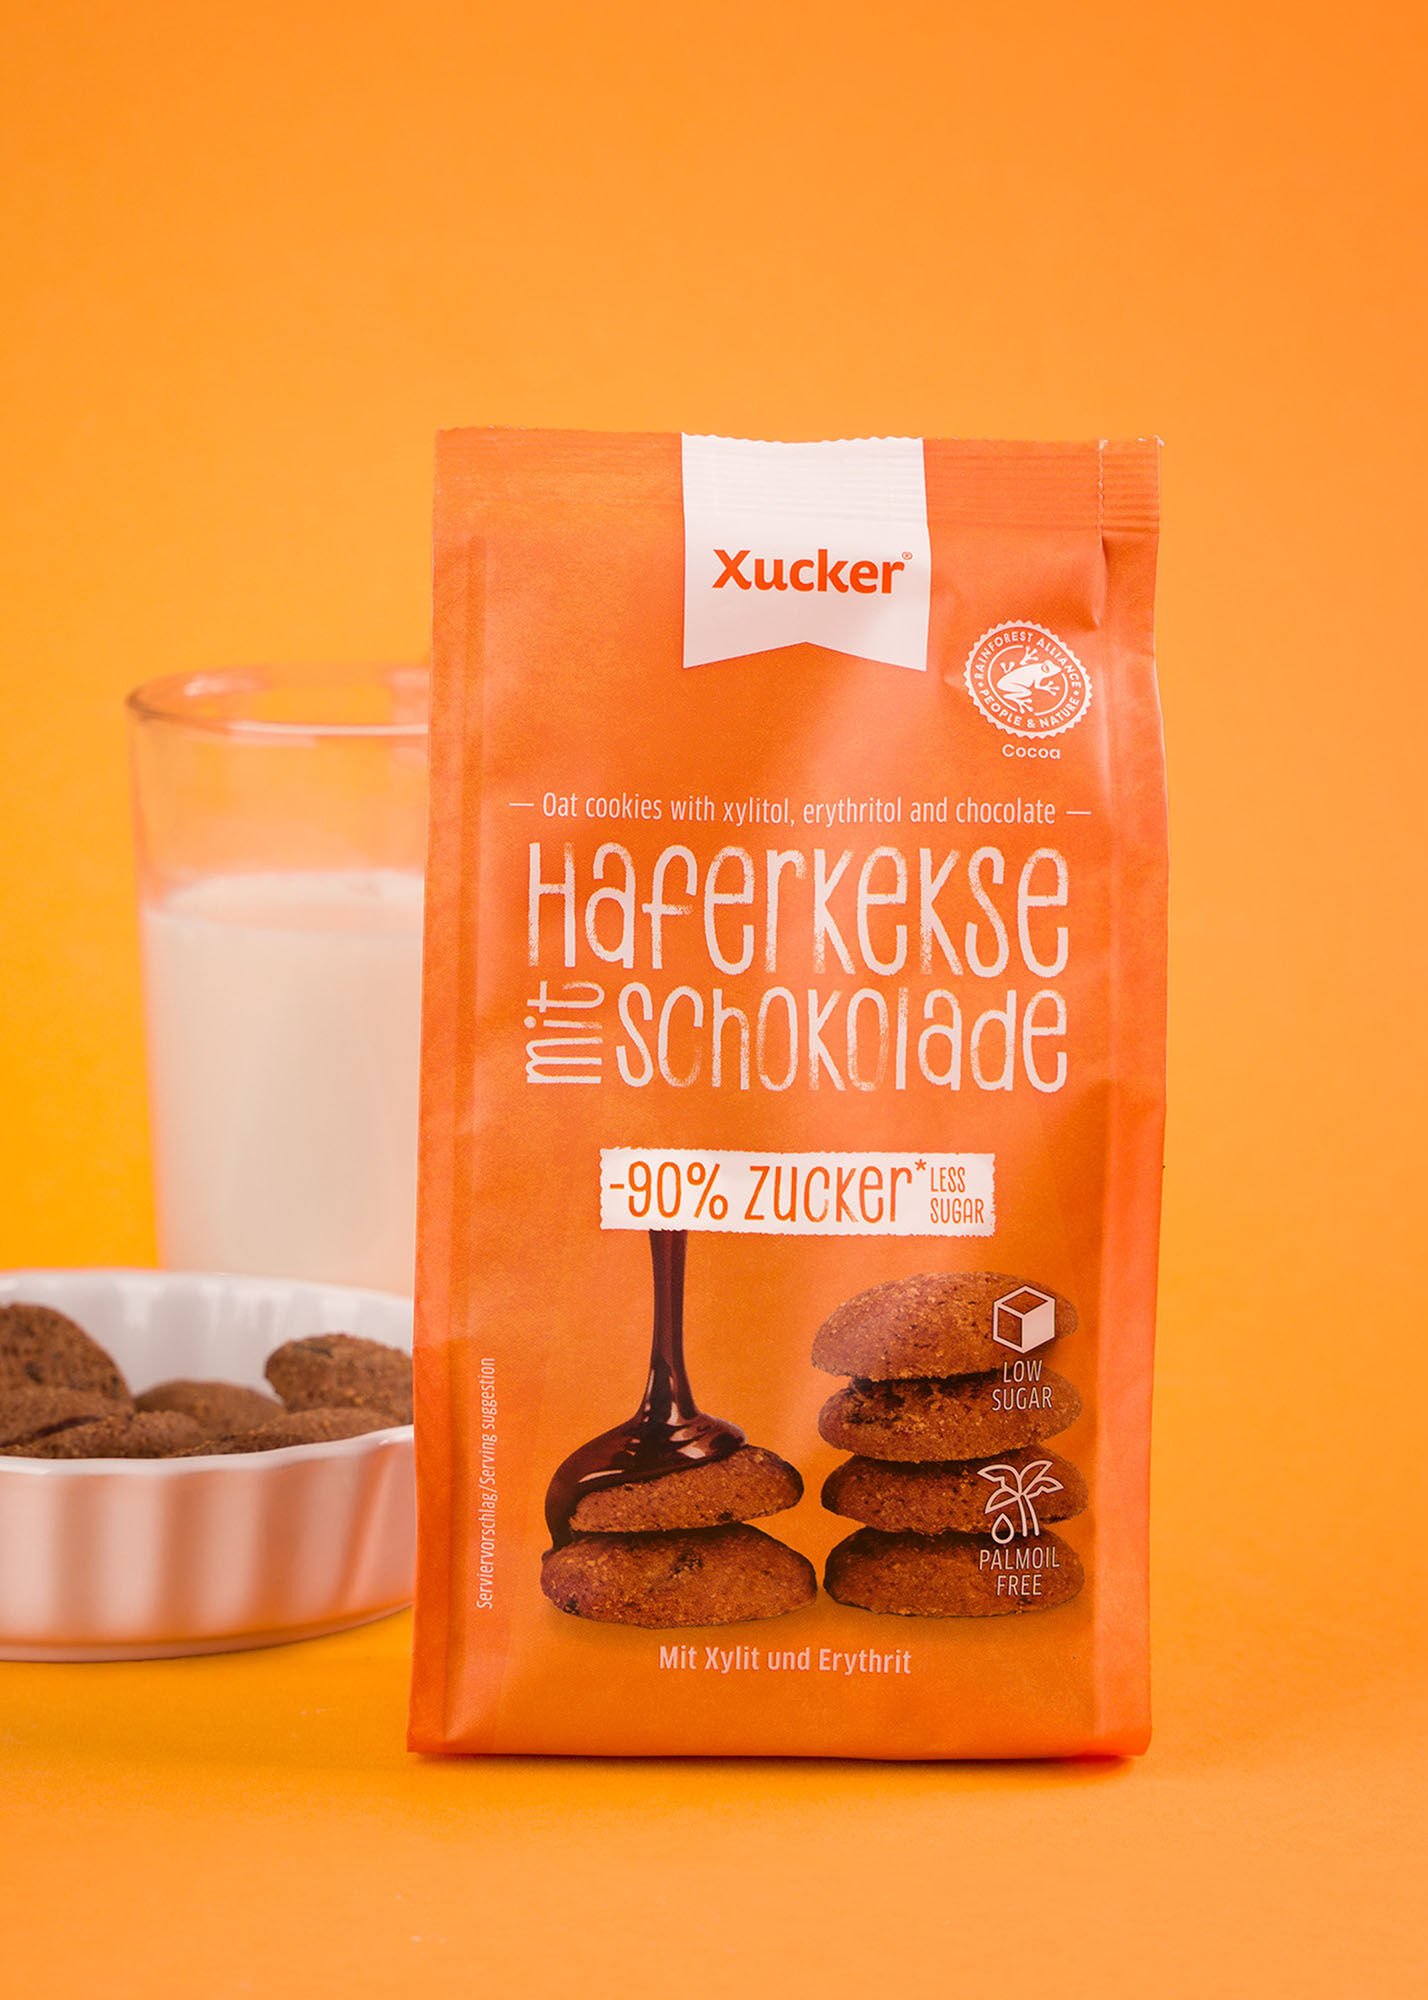 Knusperkekse (zuckerarme Hafer-Schoko-Kekse) von Xucker